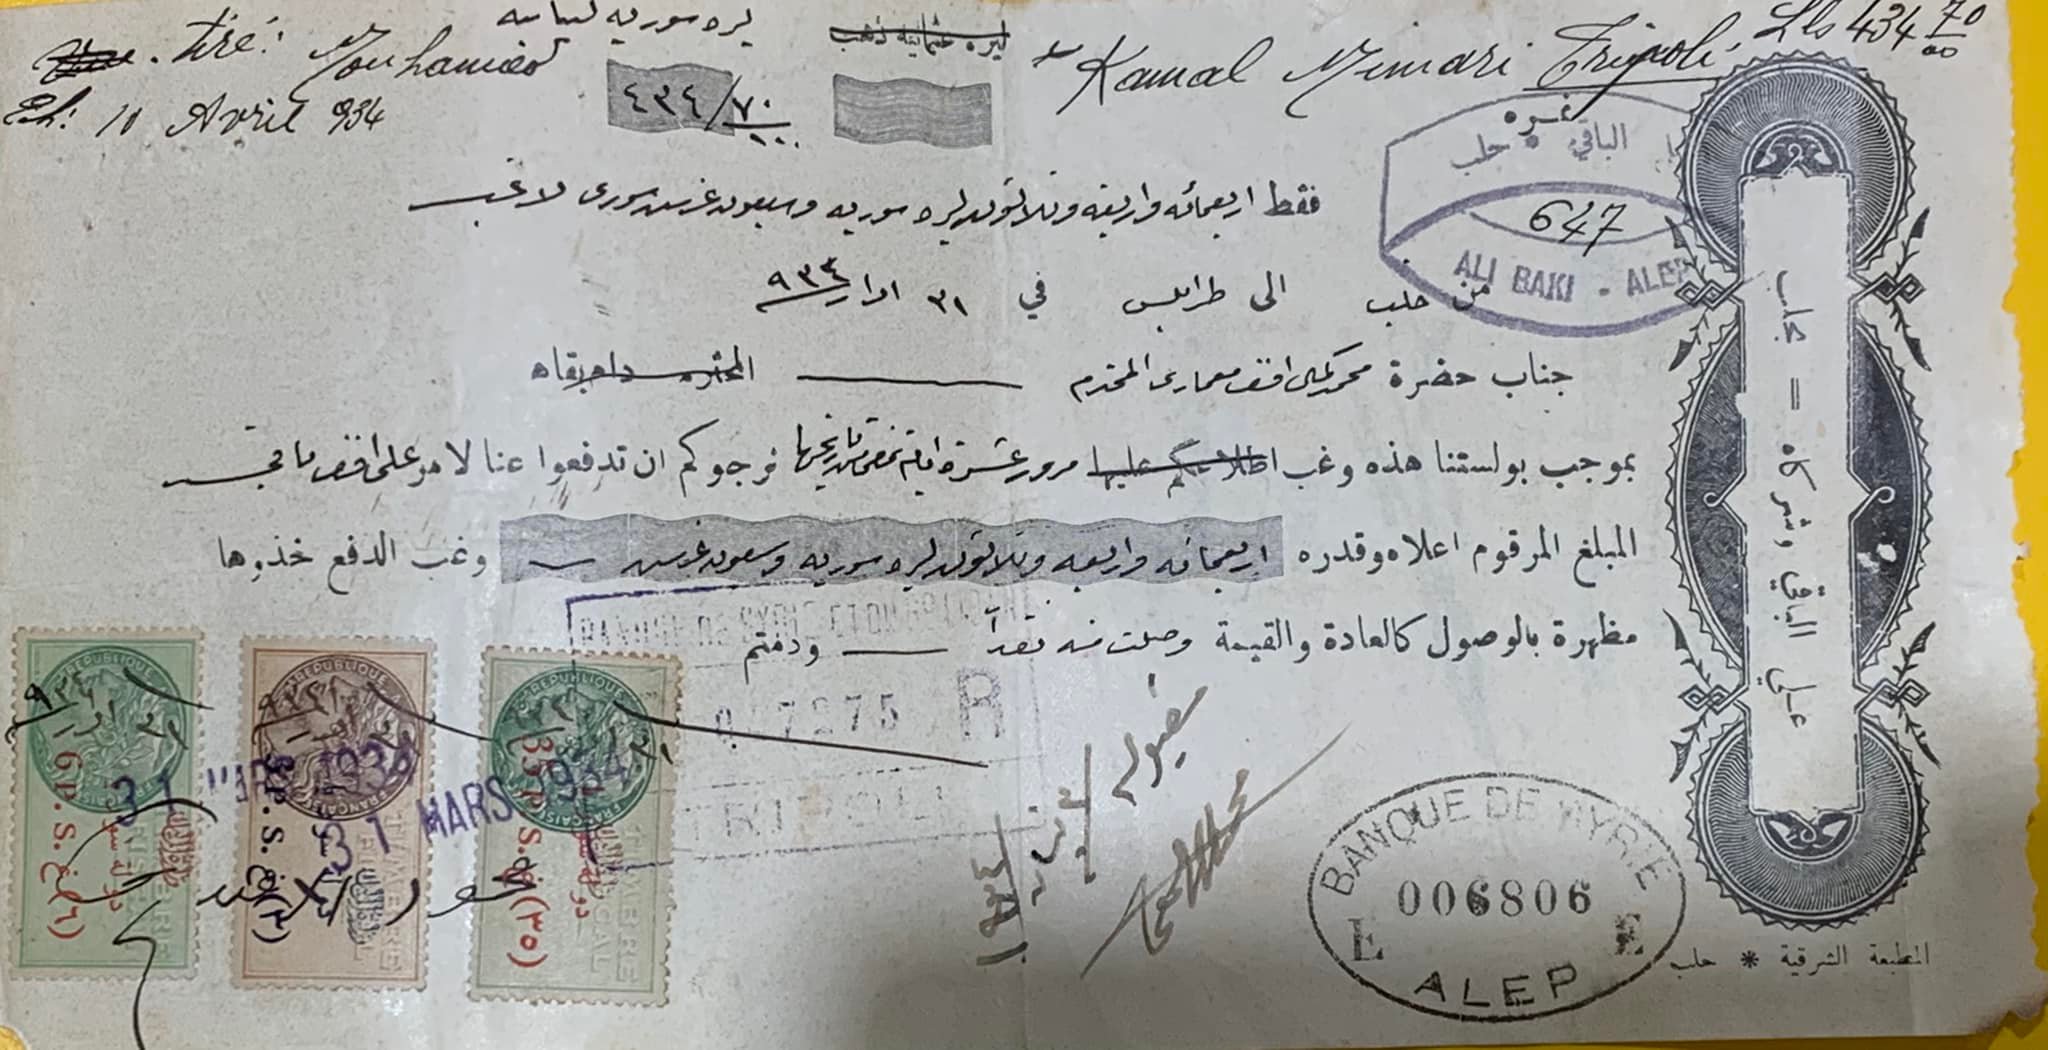 التاريخ السوري المعاصر - سند سحب تجاري بقيمة 434 ليرة سورية تحويل من حلب إلى طرابلس عام 1934